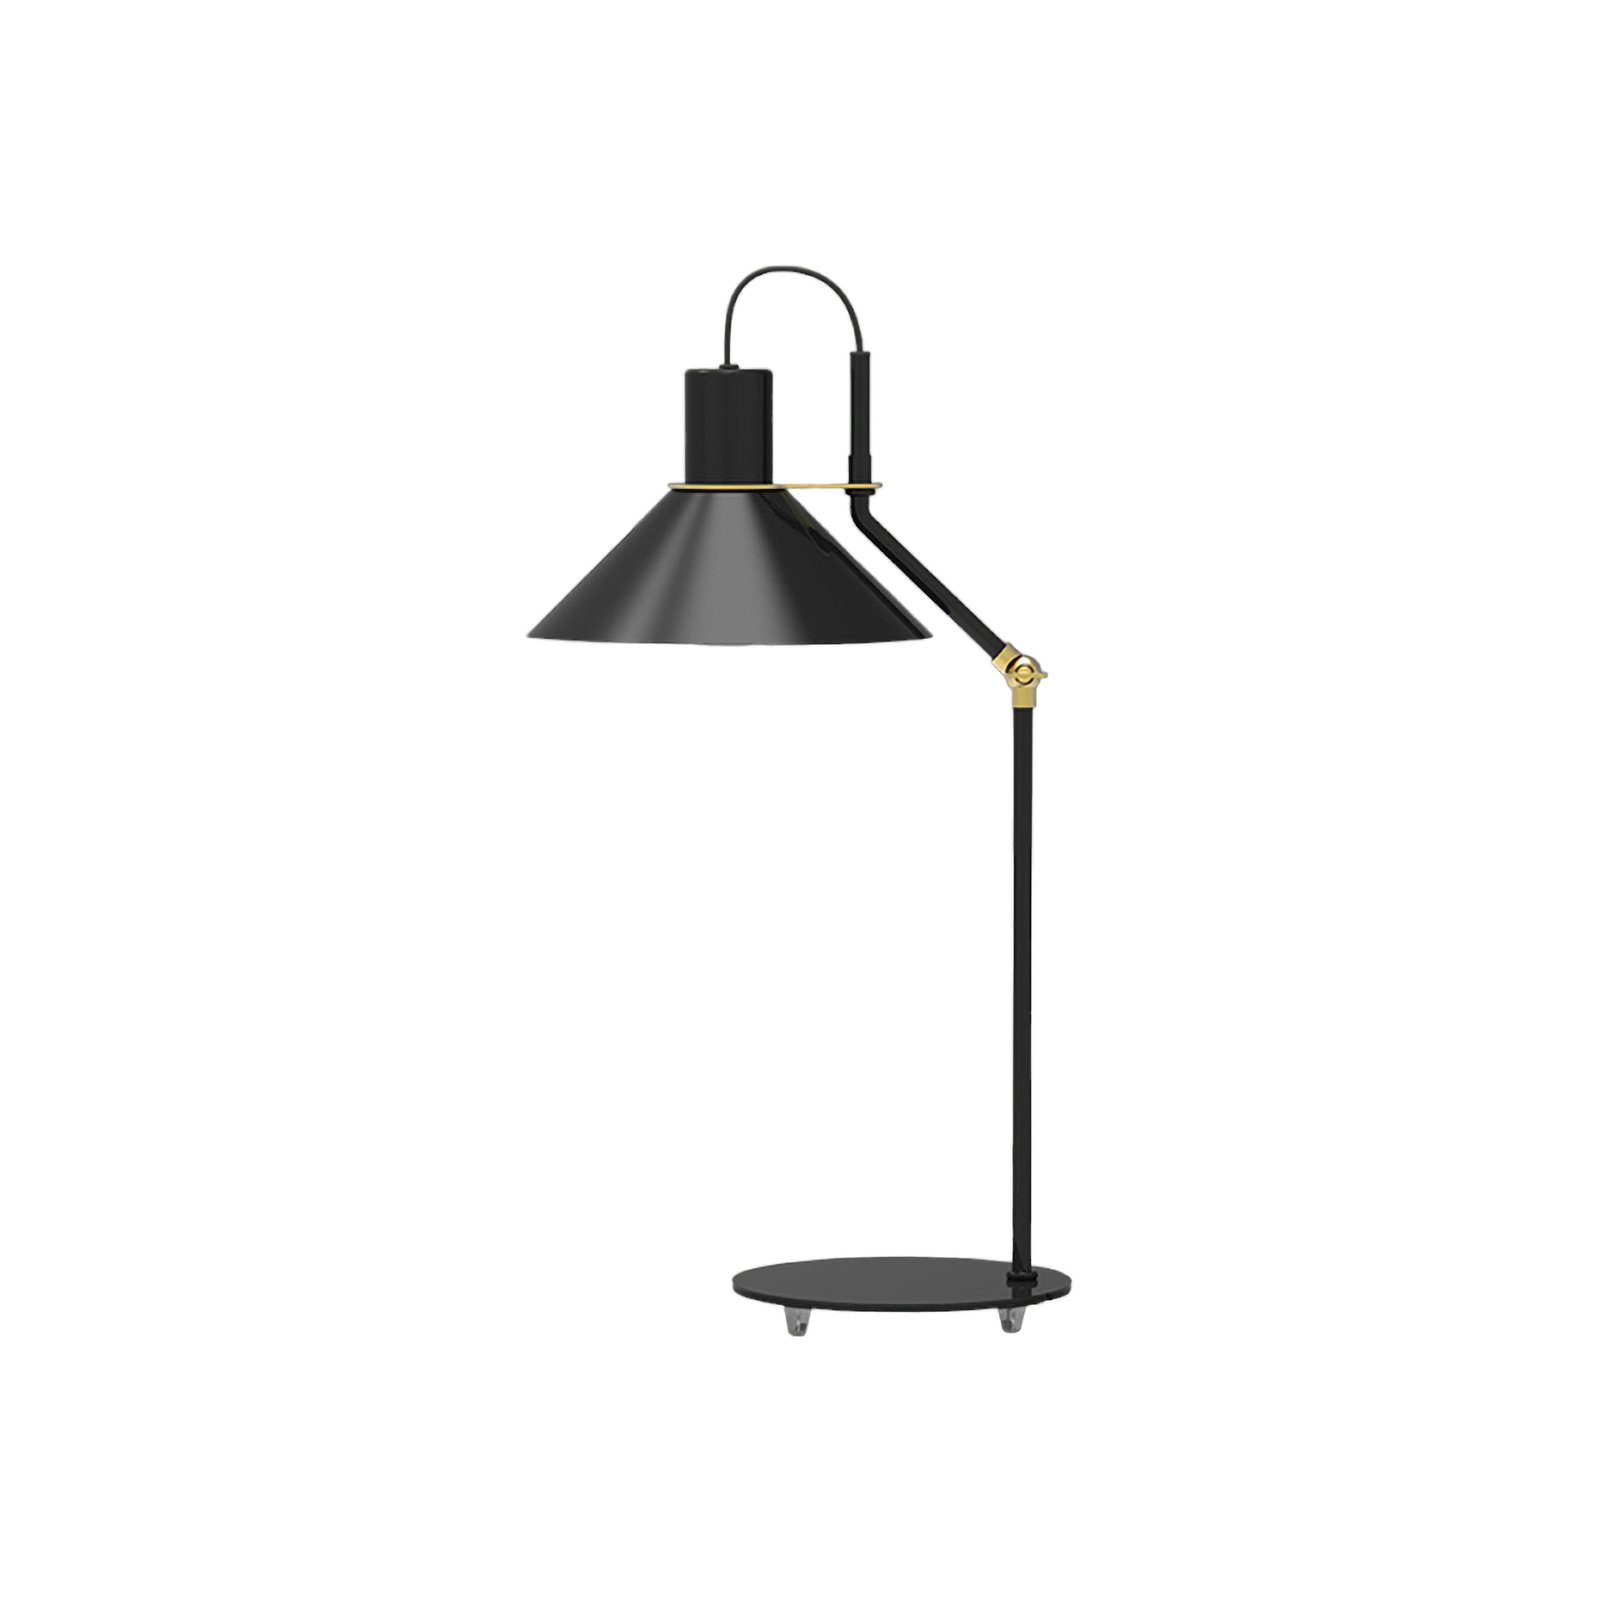 Aluminor Zinga stolna lampa, crna, mesing detalj